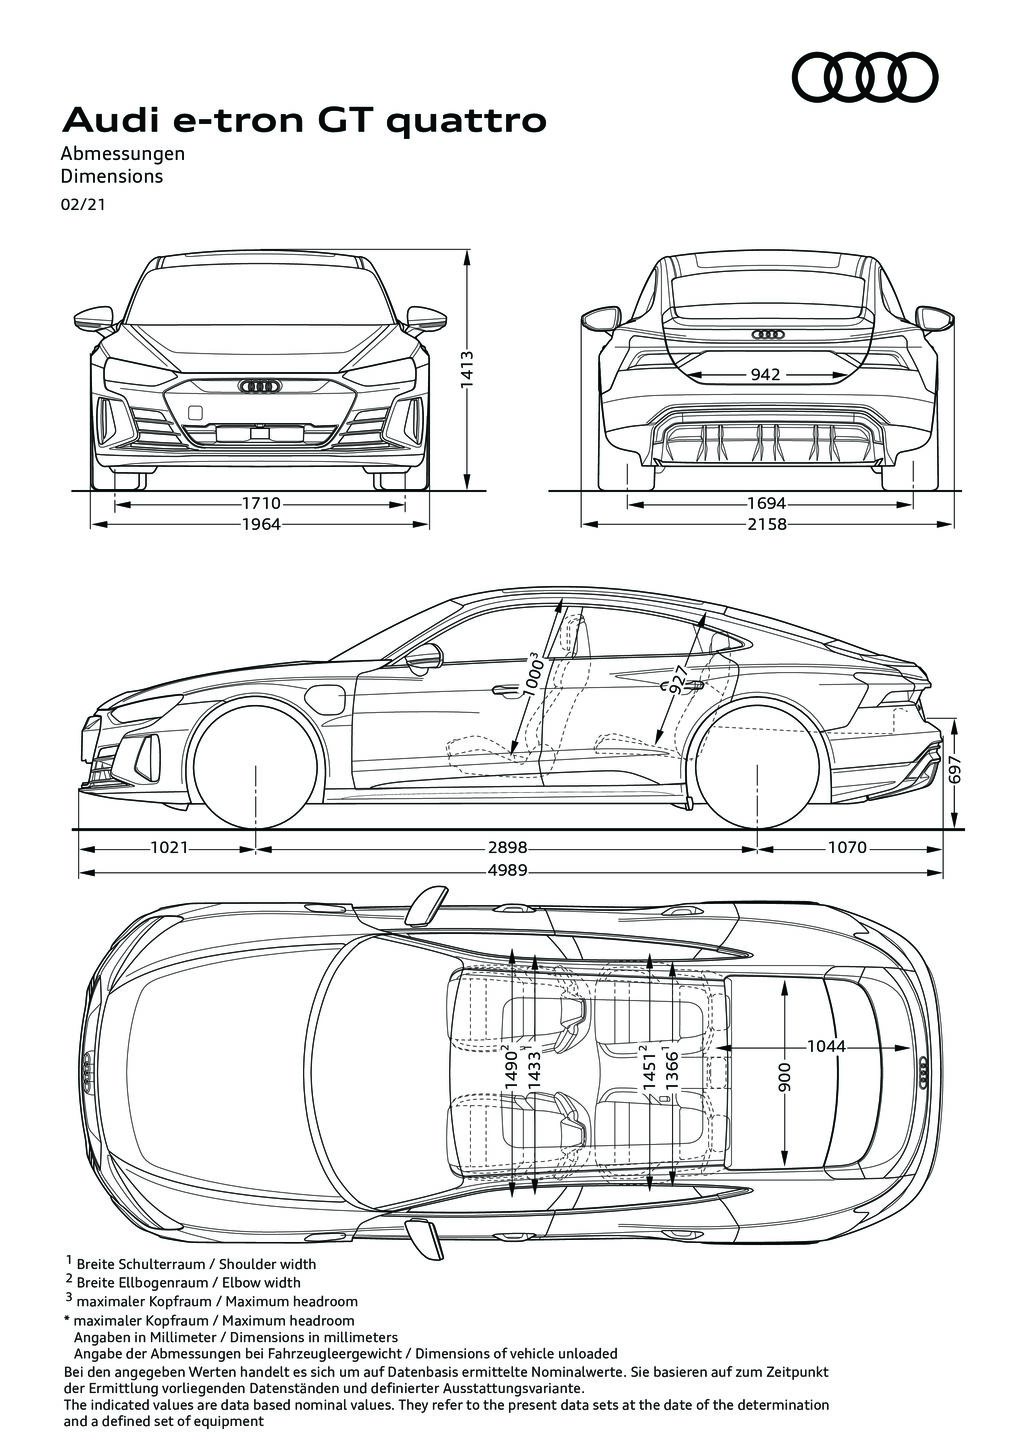 Dimensions e-tron GT quattro